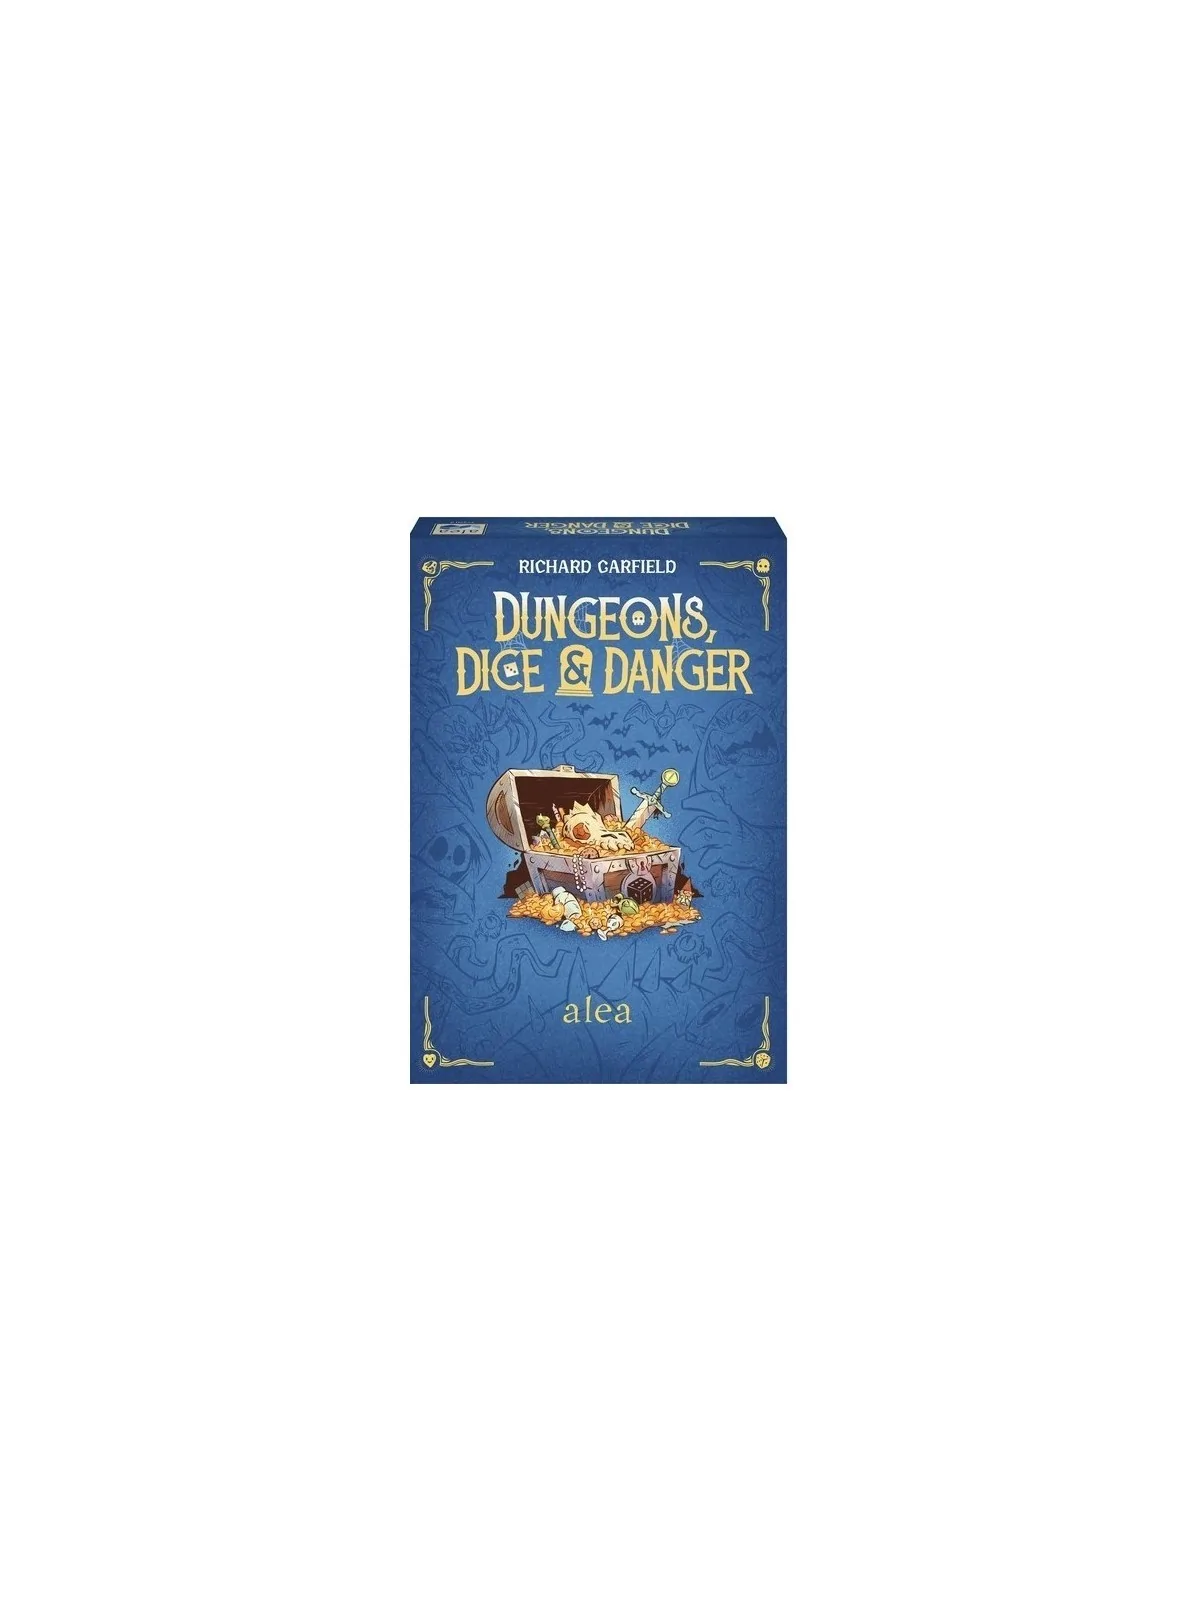 Comprar Dungeons, Dice & Danger barato al mejor precio 26,95 € de Rave